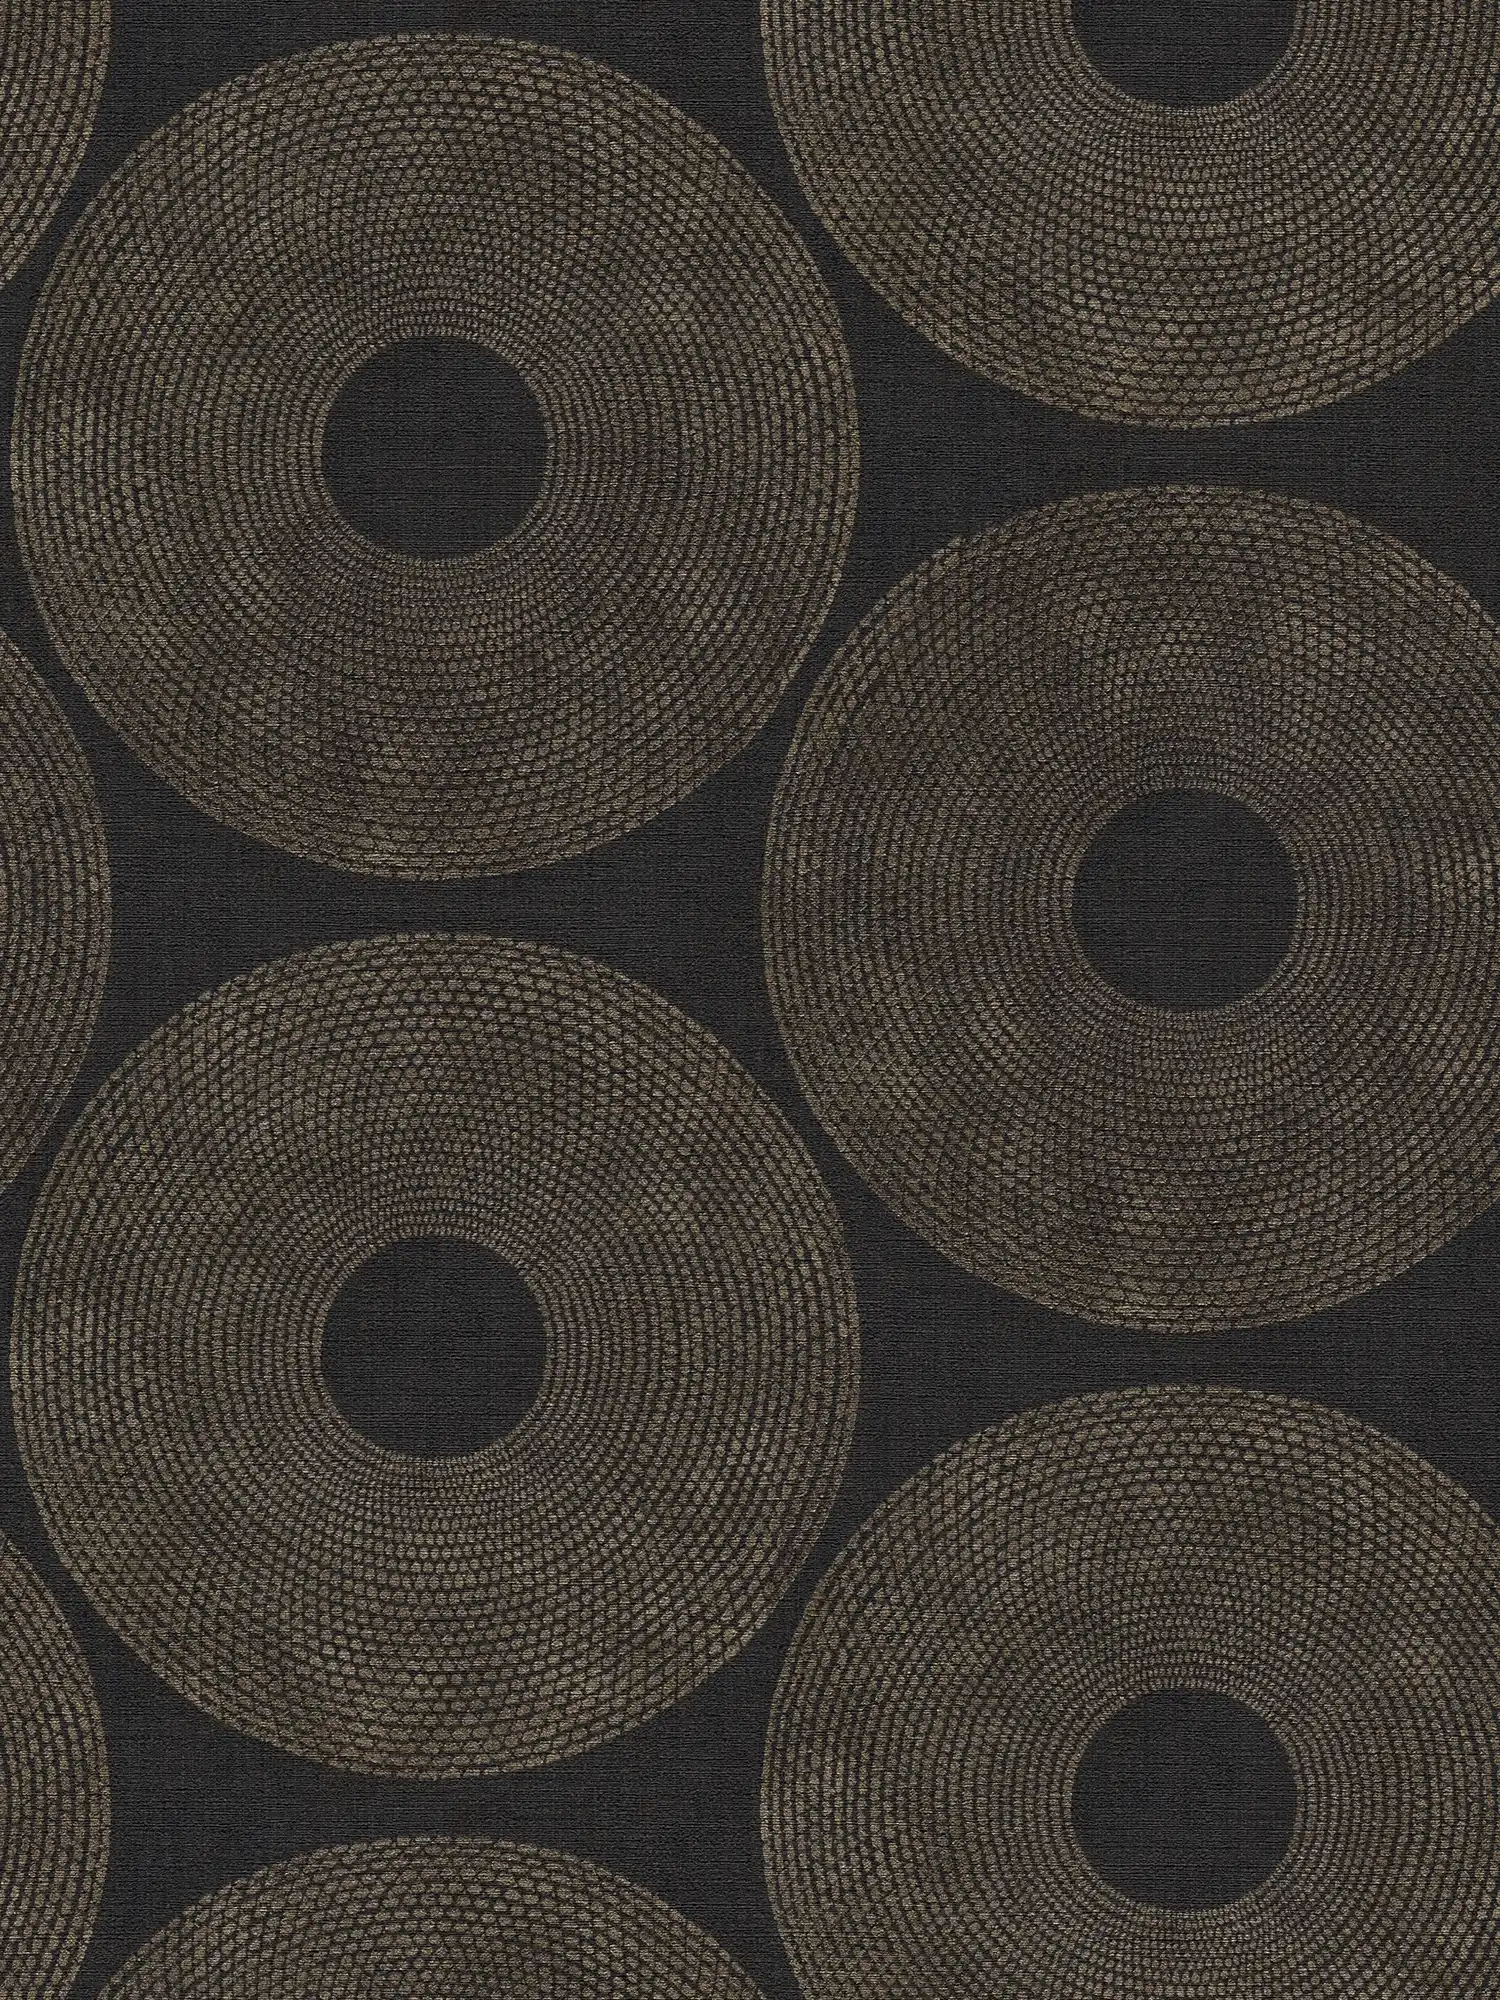         Ethno behang cirkels met structuurdesign - grijs, bruin
    